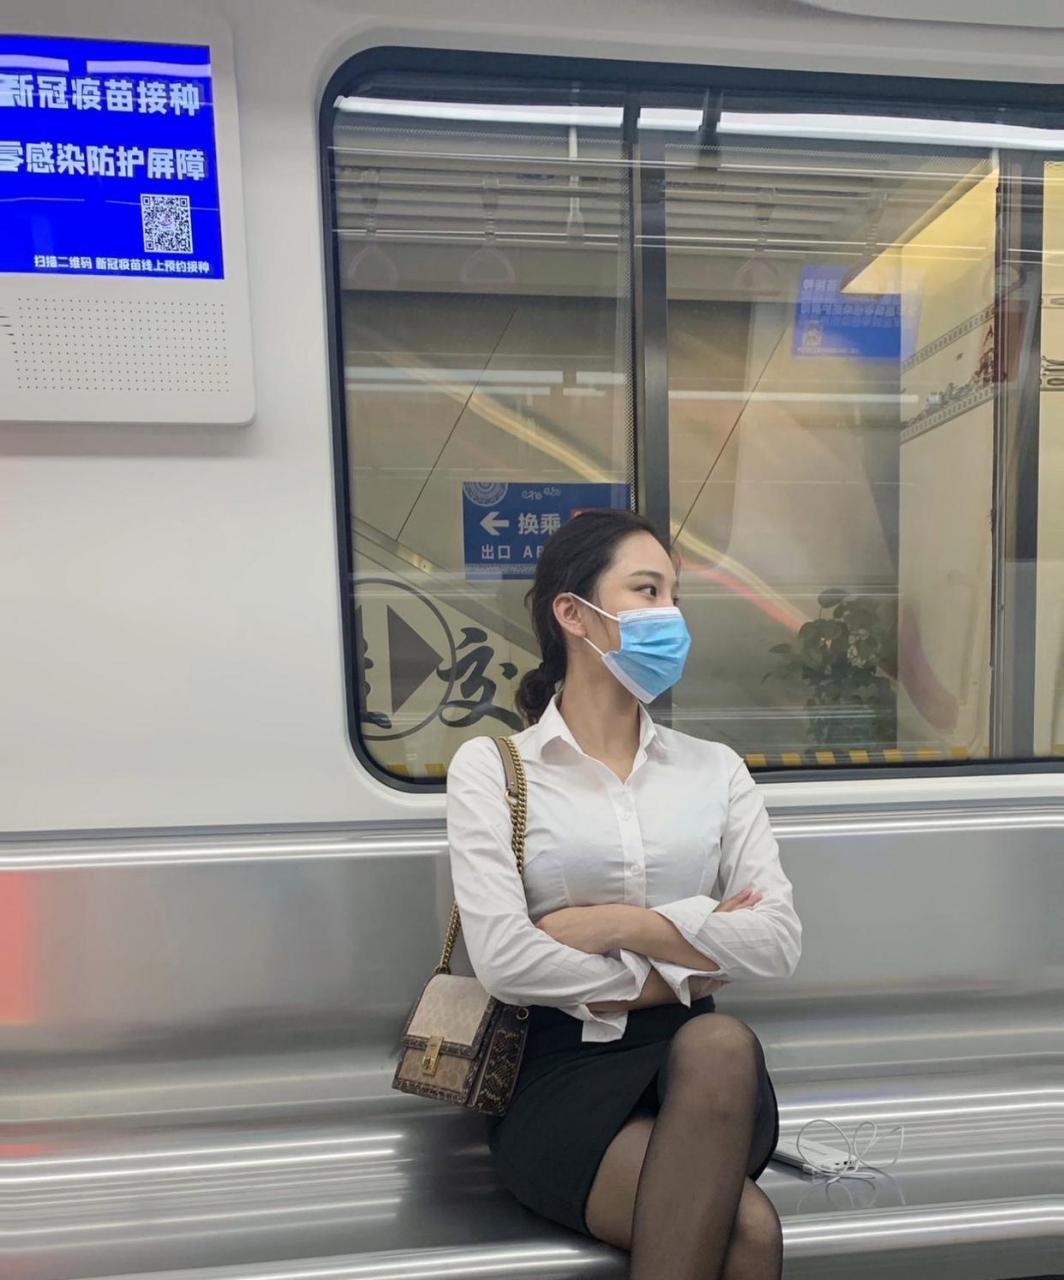 网友:地铁上遇到的气质美女,快到站了,我该怎么要联系方式,在线等挺急